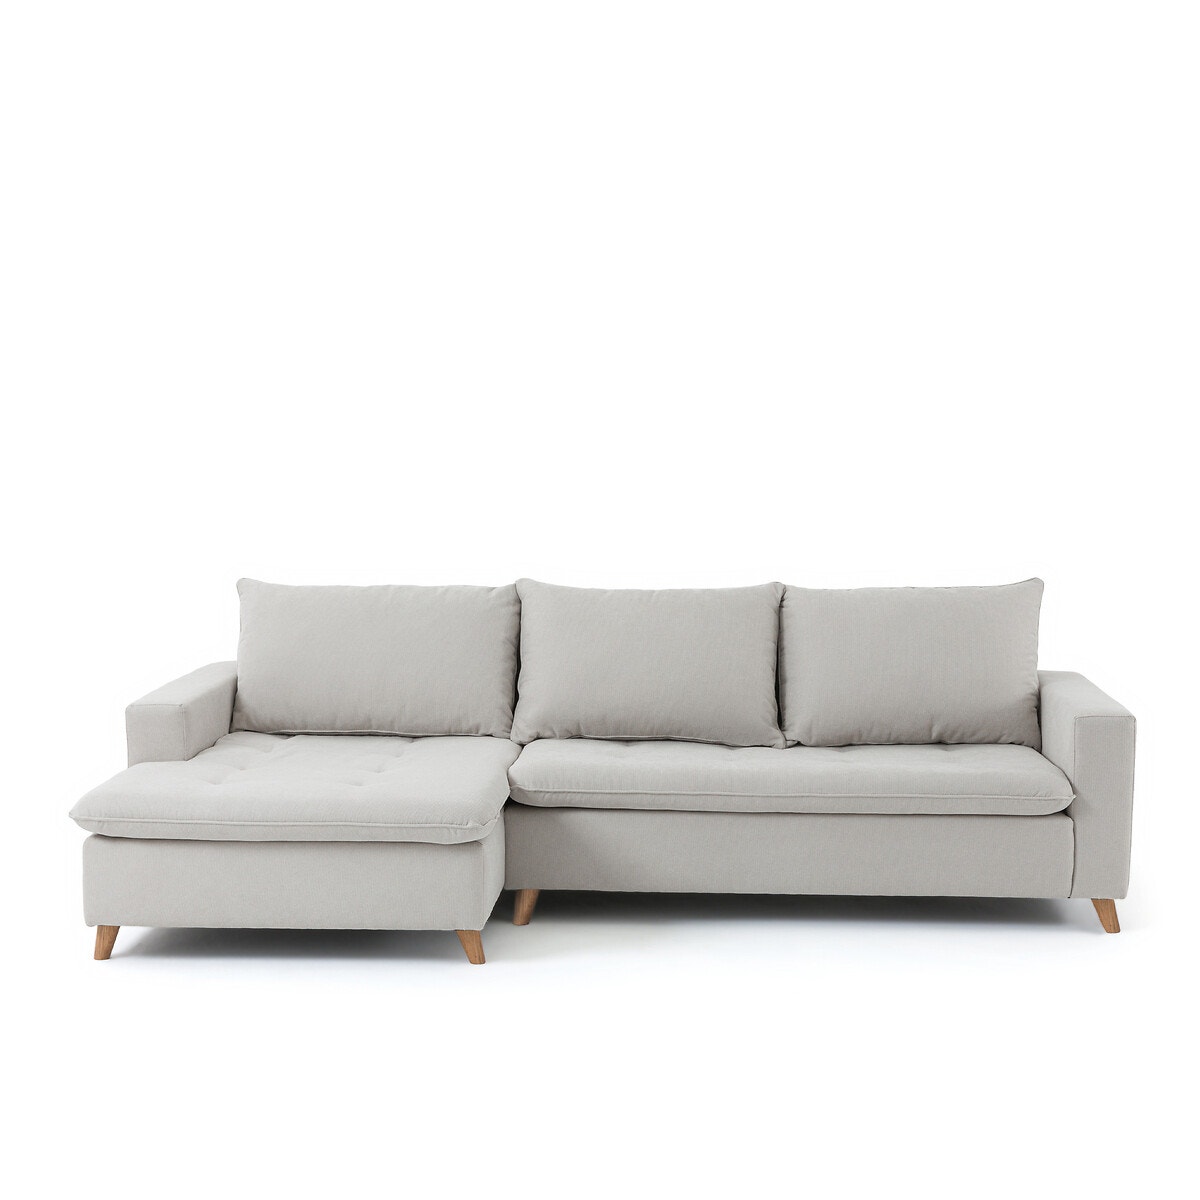 Γωνιακός καναπές με ταπετσαρία ανάγλυφης ύφανσης και αριστερή γωνία, Milare